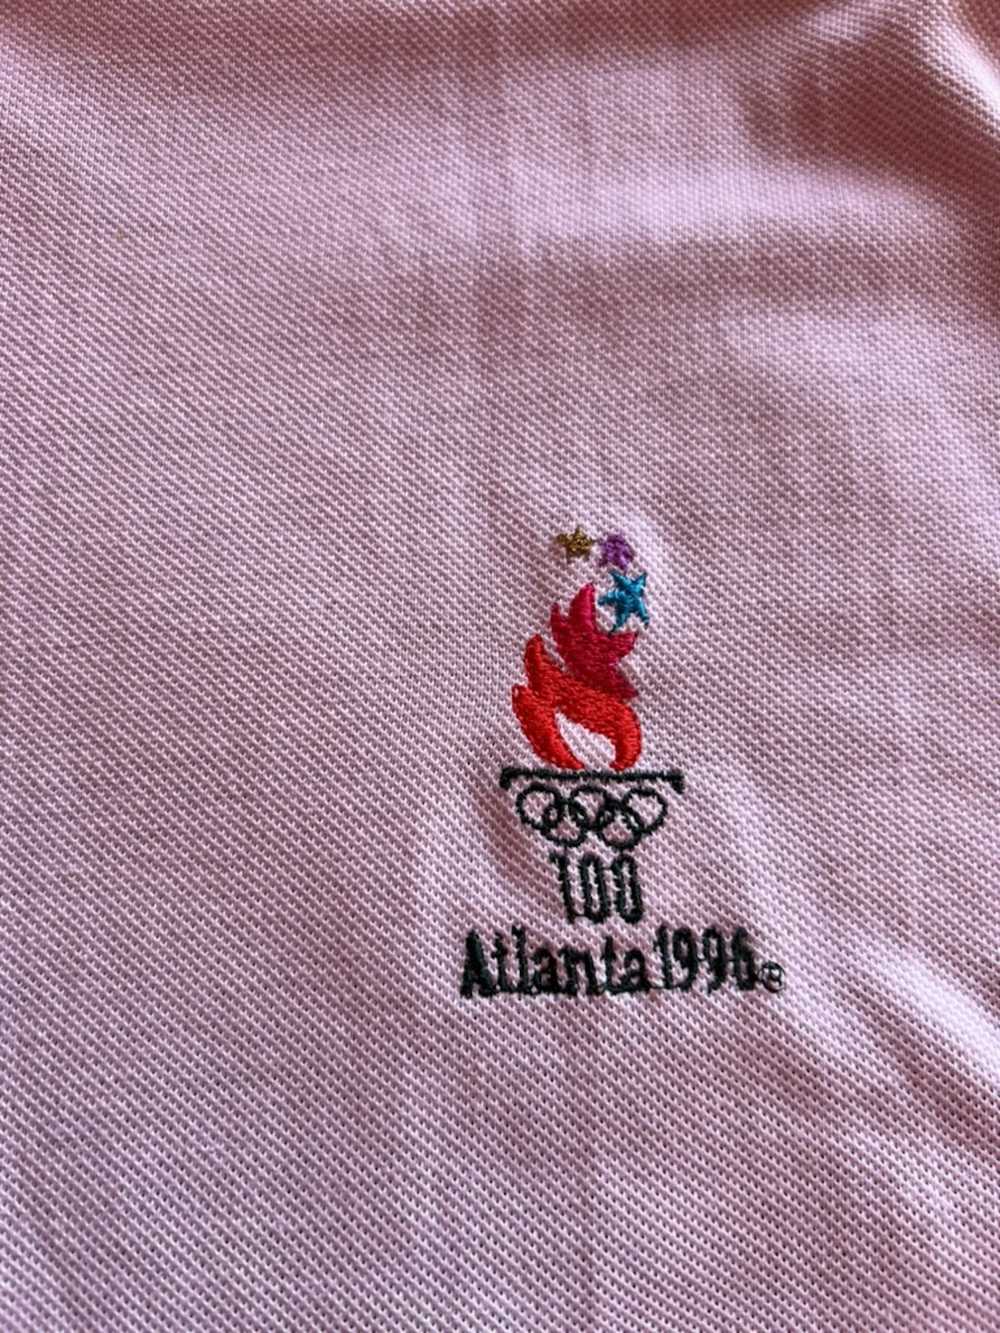 Usa Olympics '96 Atlanta Olympics Polo - image 2